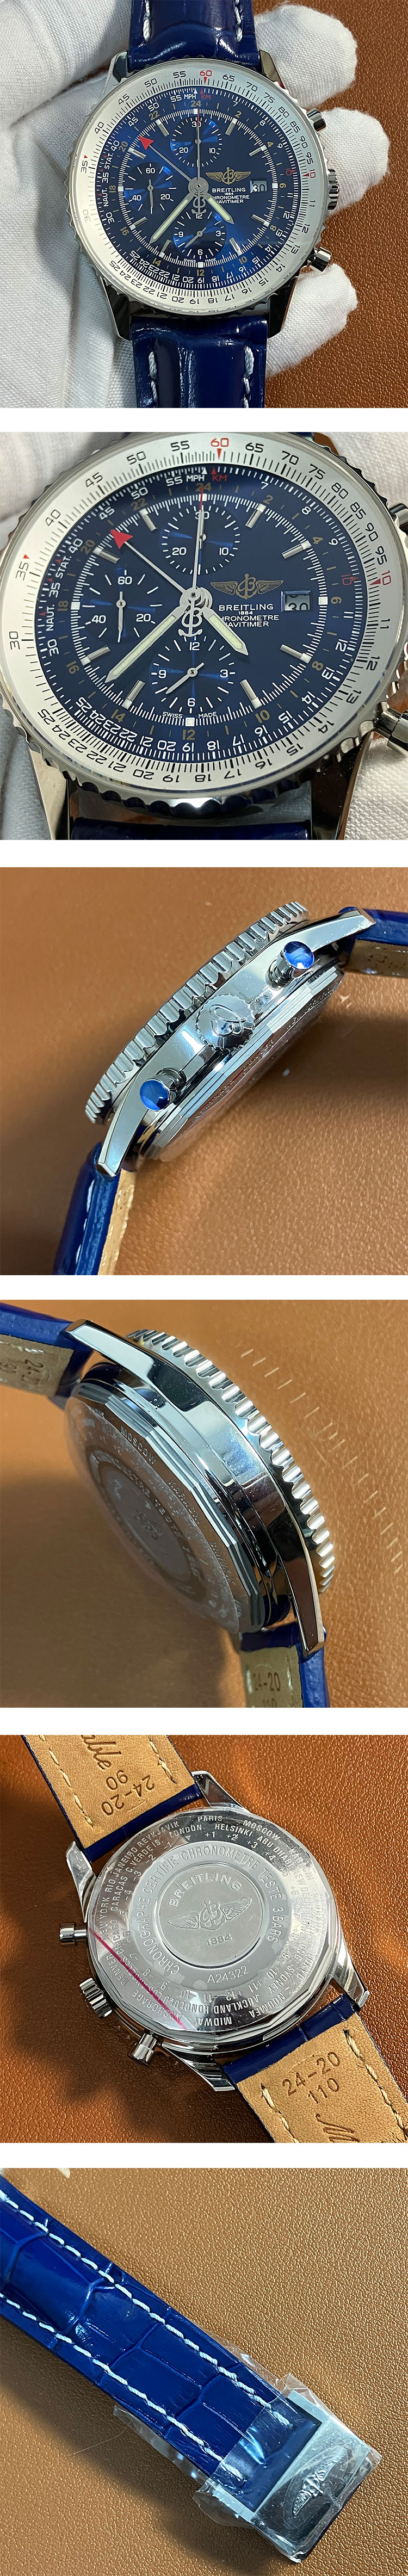 高品質ブライトリングコピー時計 ナビタイマー GMT A24322121C1P1 ブルー 46mm